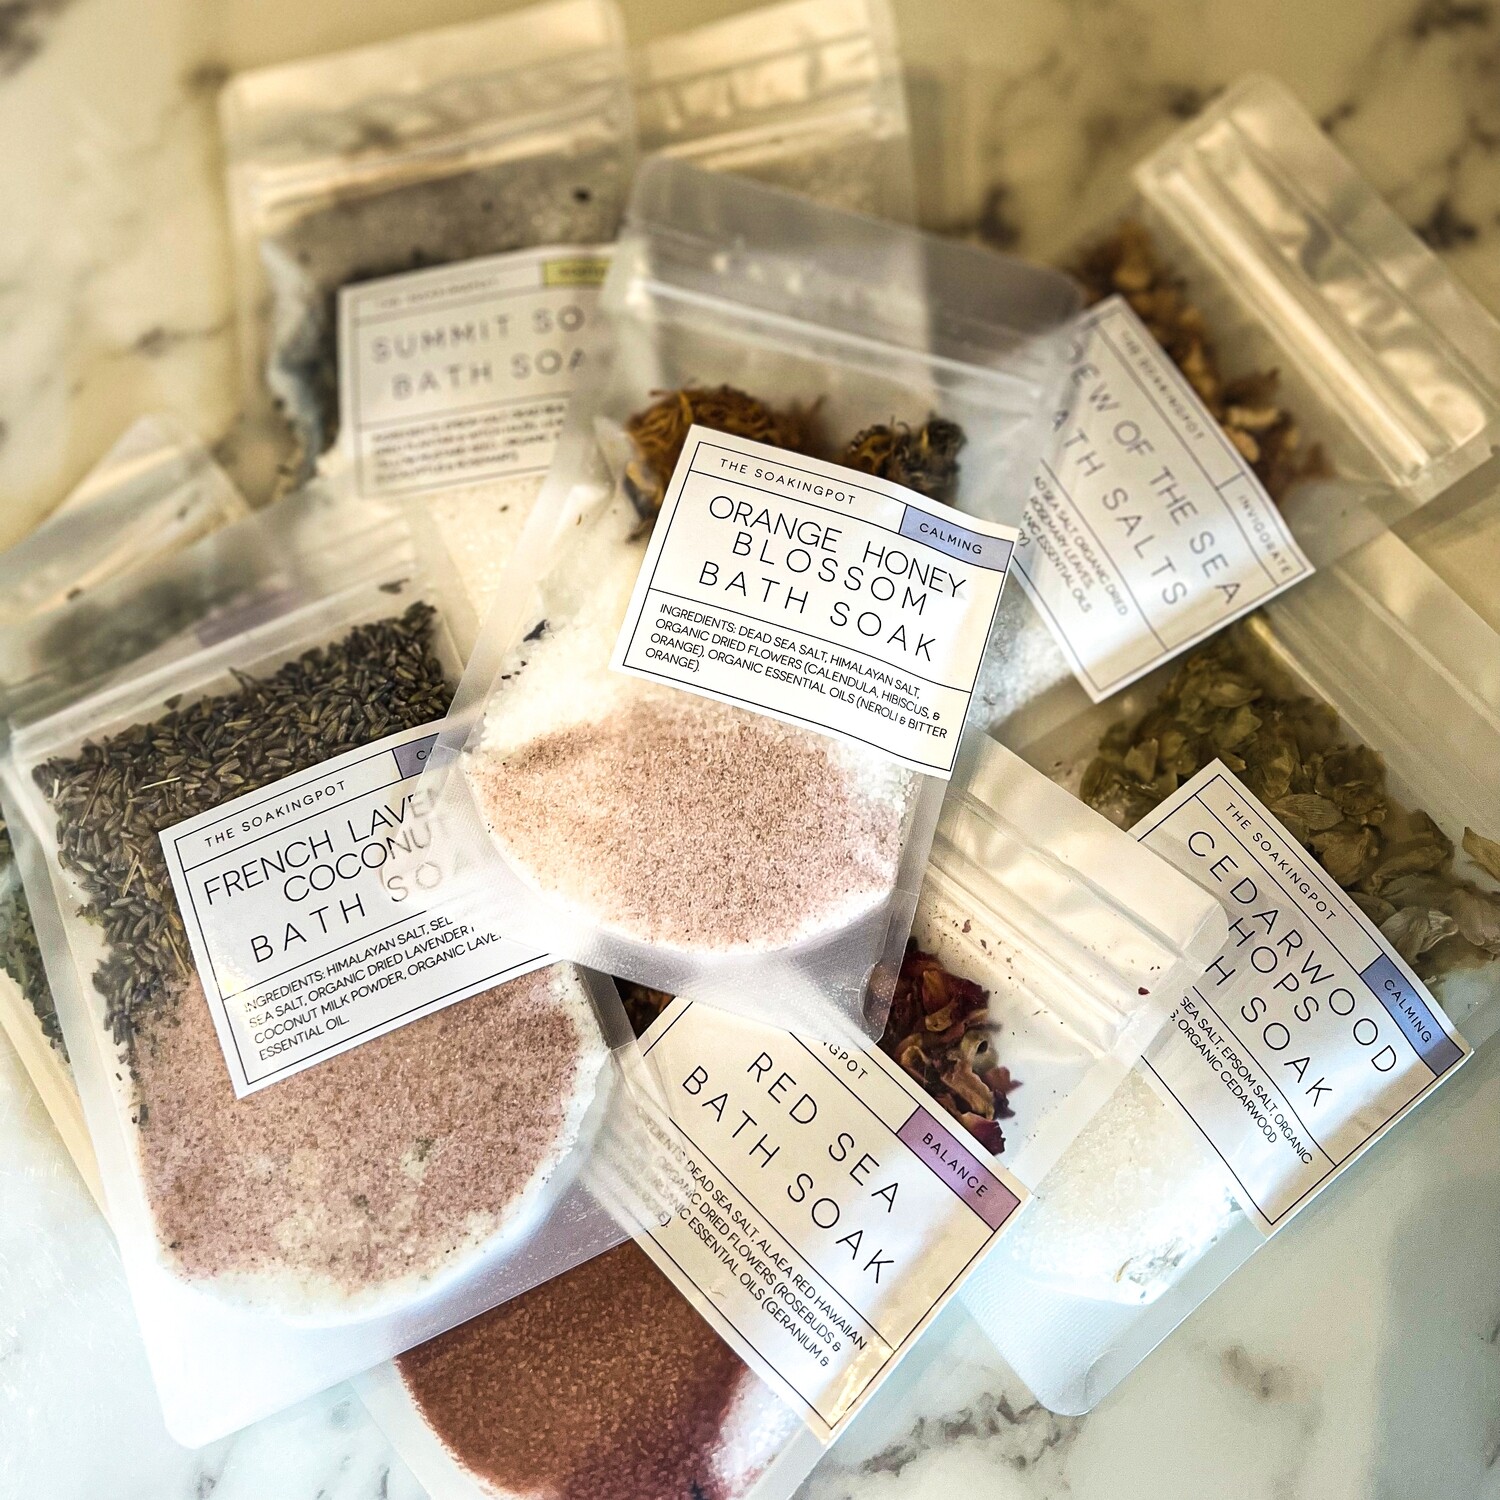 Bath salt samples